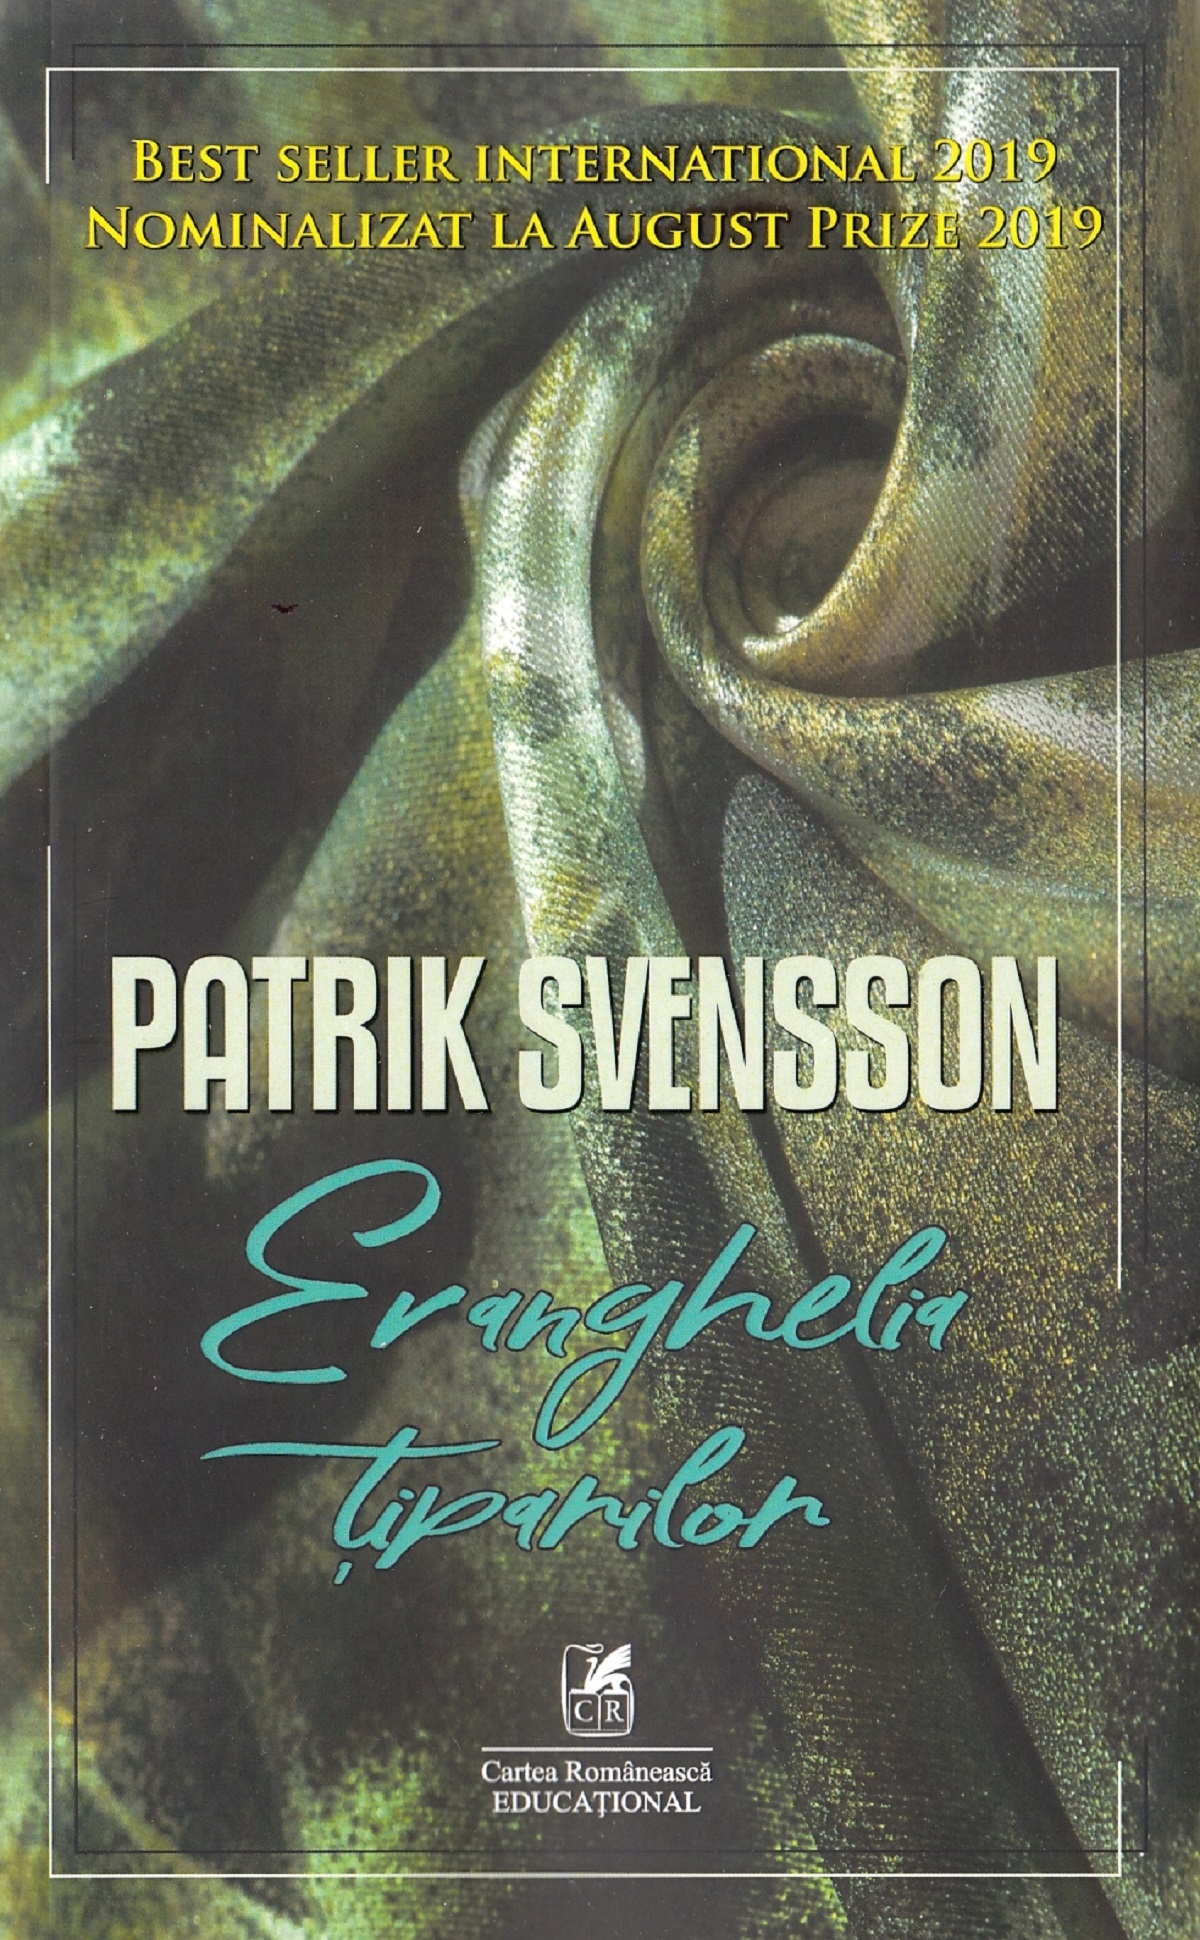 Evanghelia tiparilor - Patrik Svensson